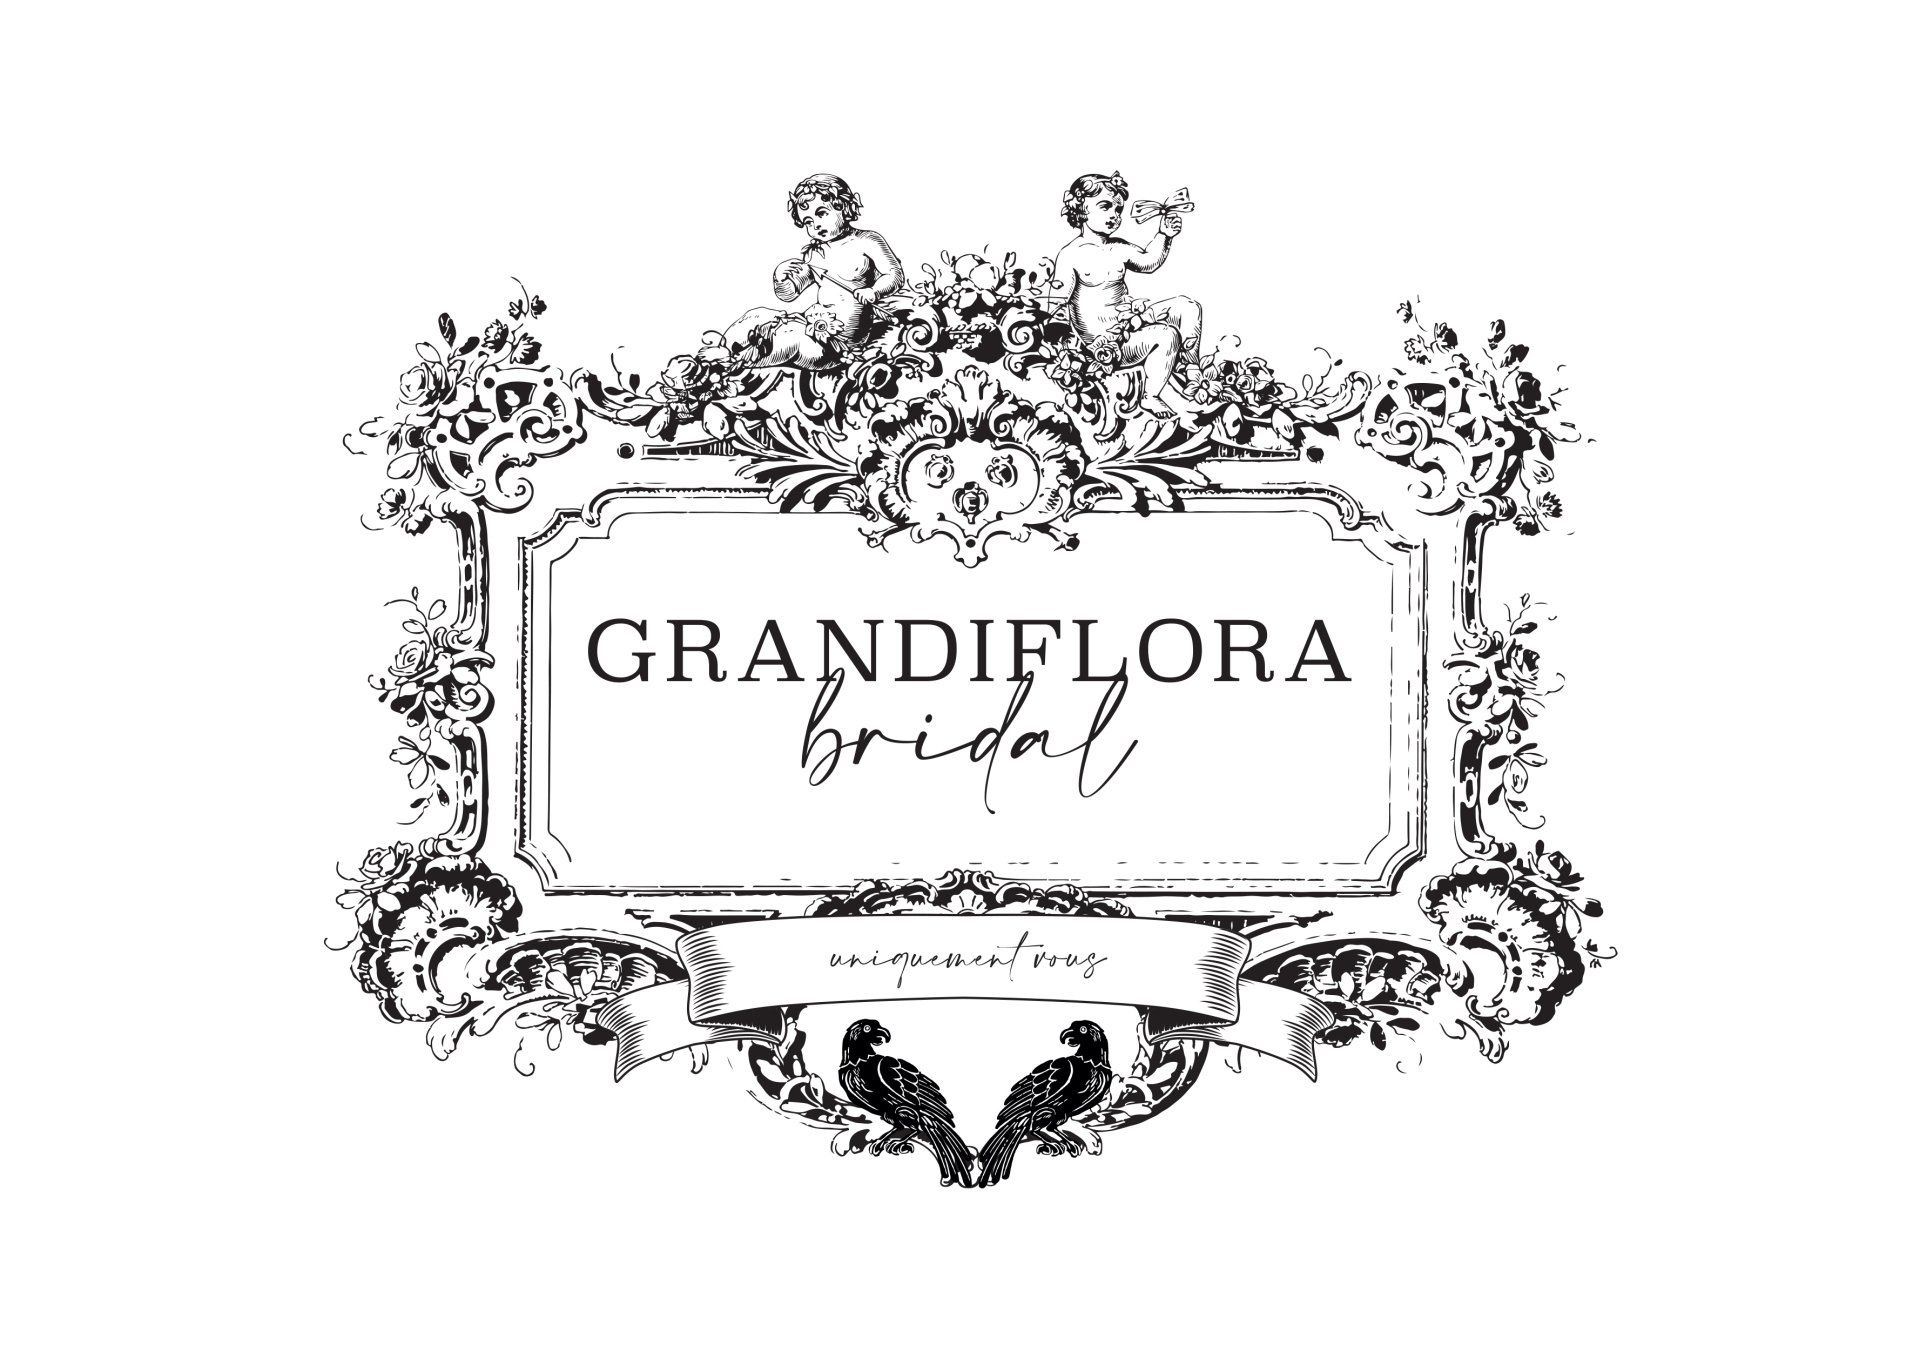 Grandiflora Bridal